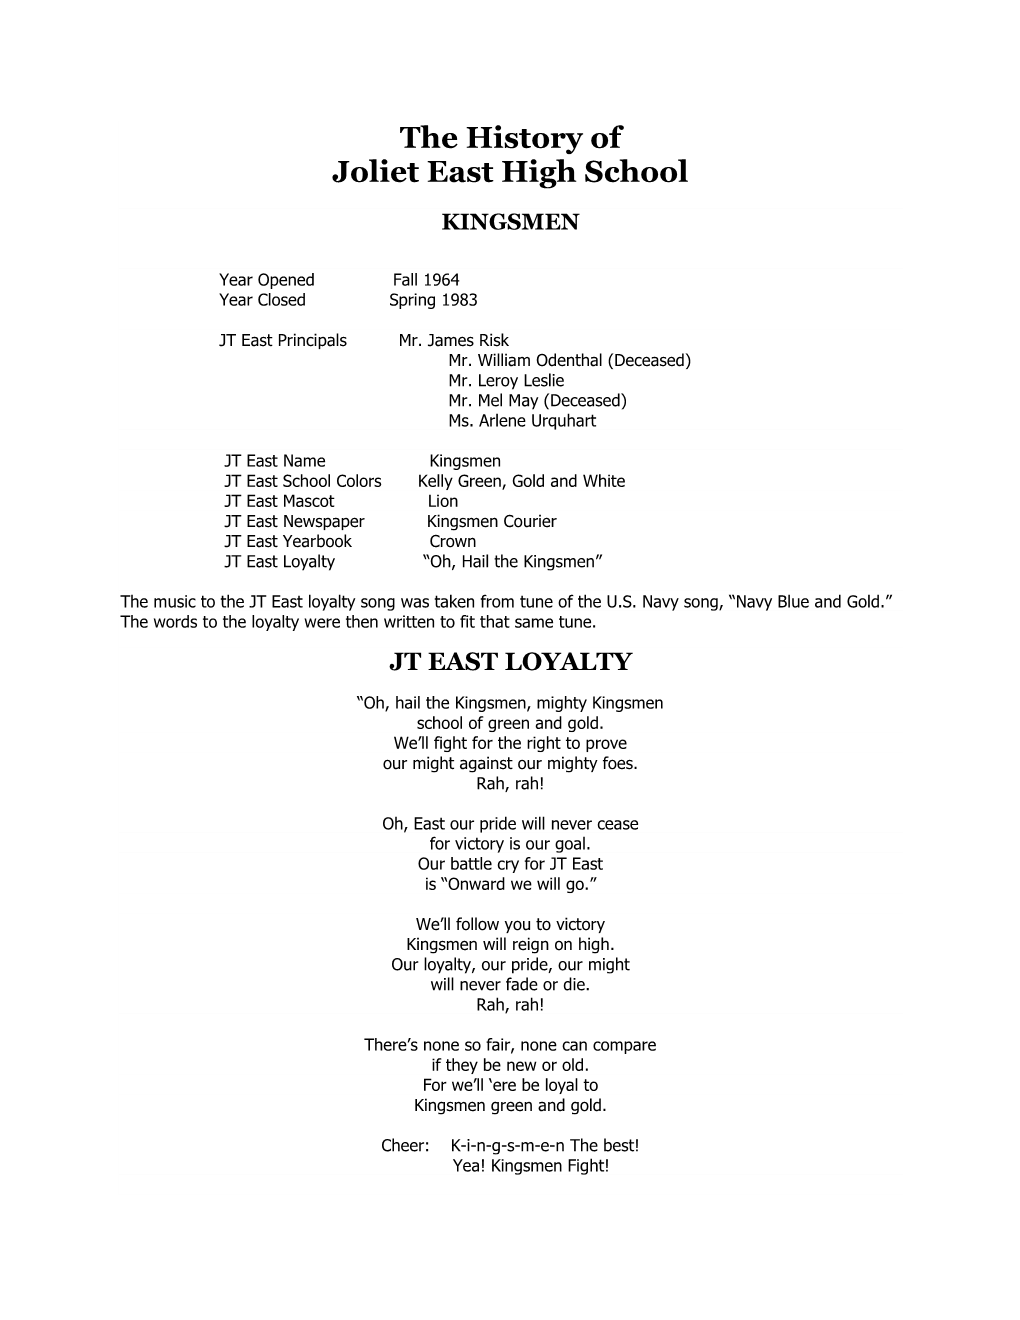 The History of Joliet East High School